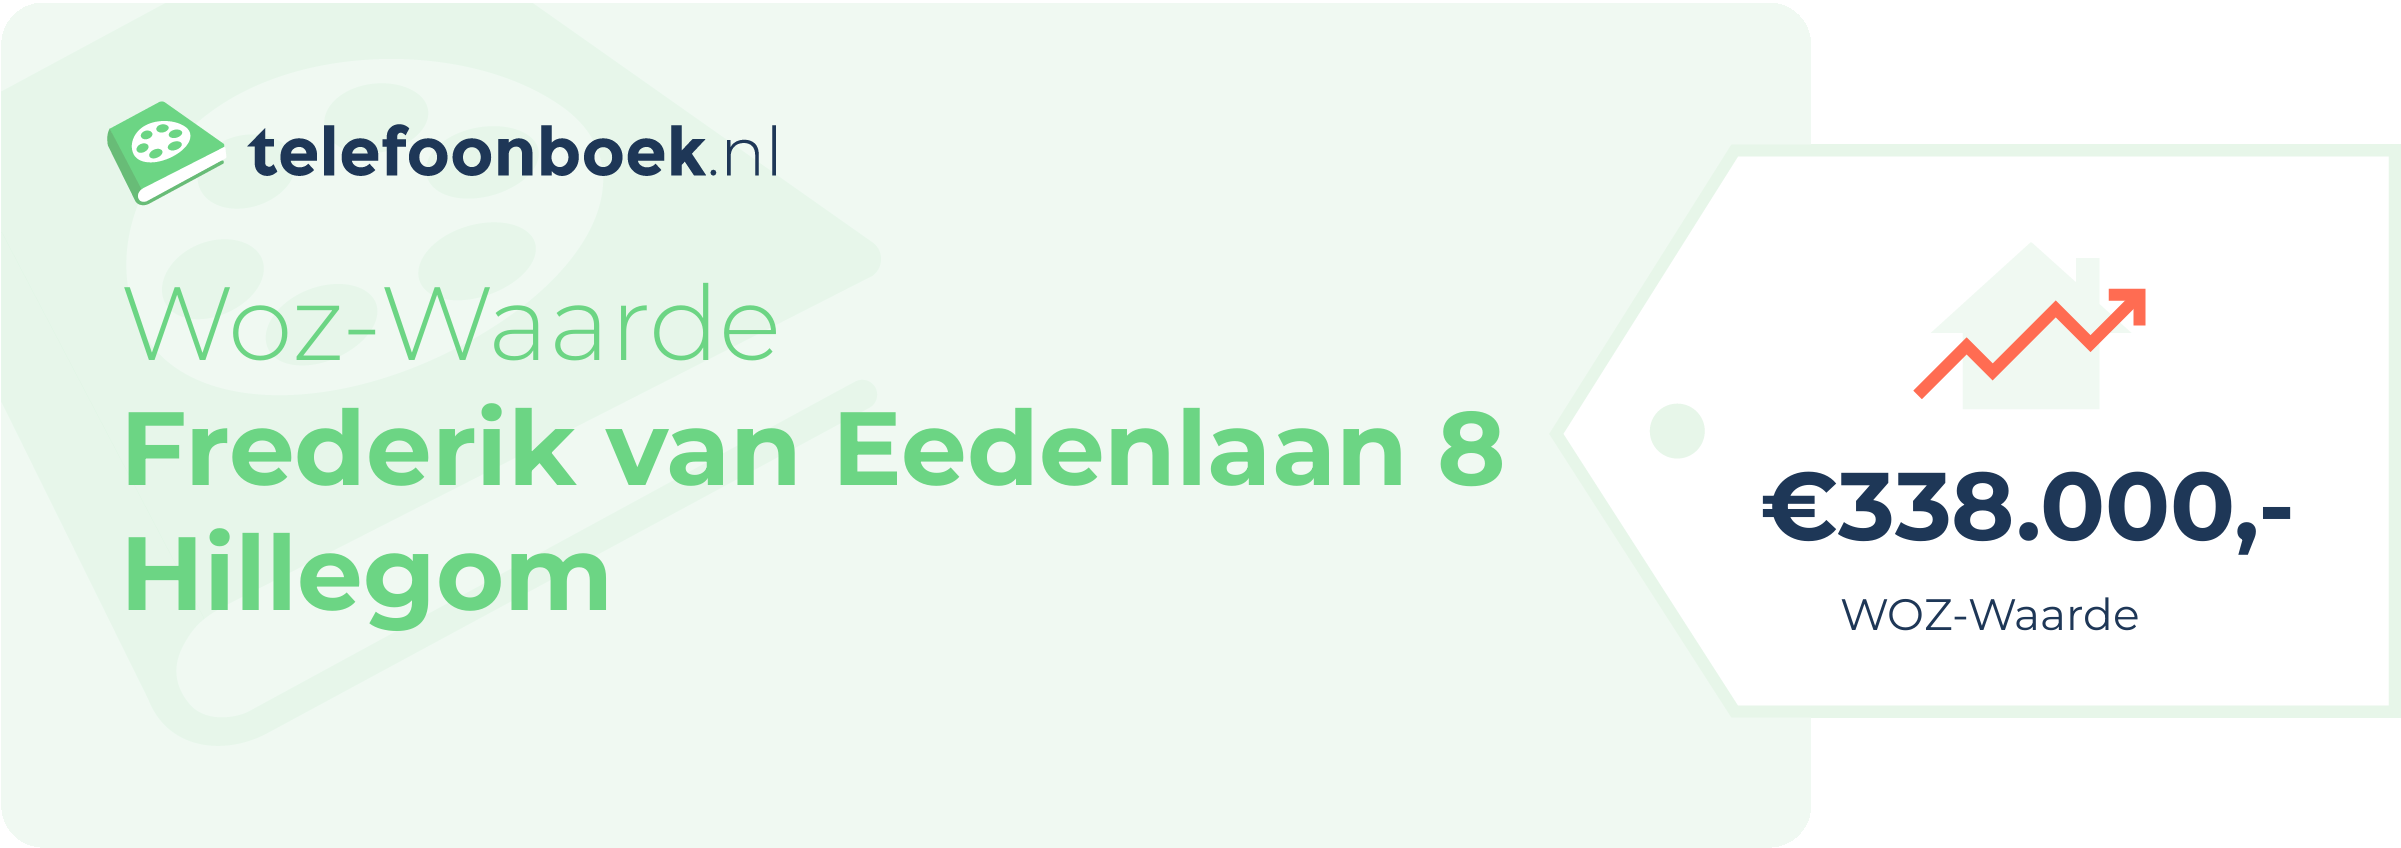 WOZ-waarde Frederik Van Eedenlaan 8 Hillegom